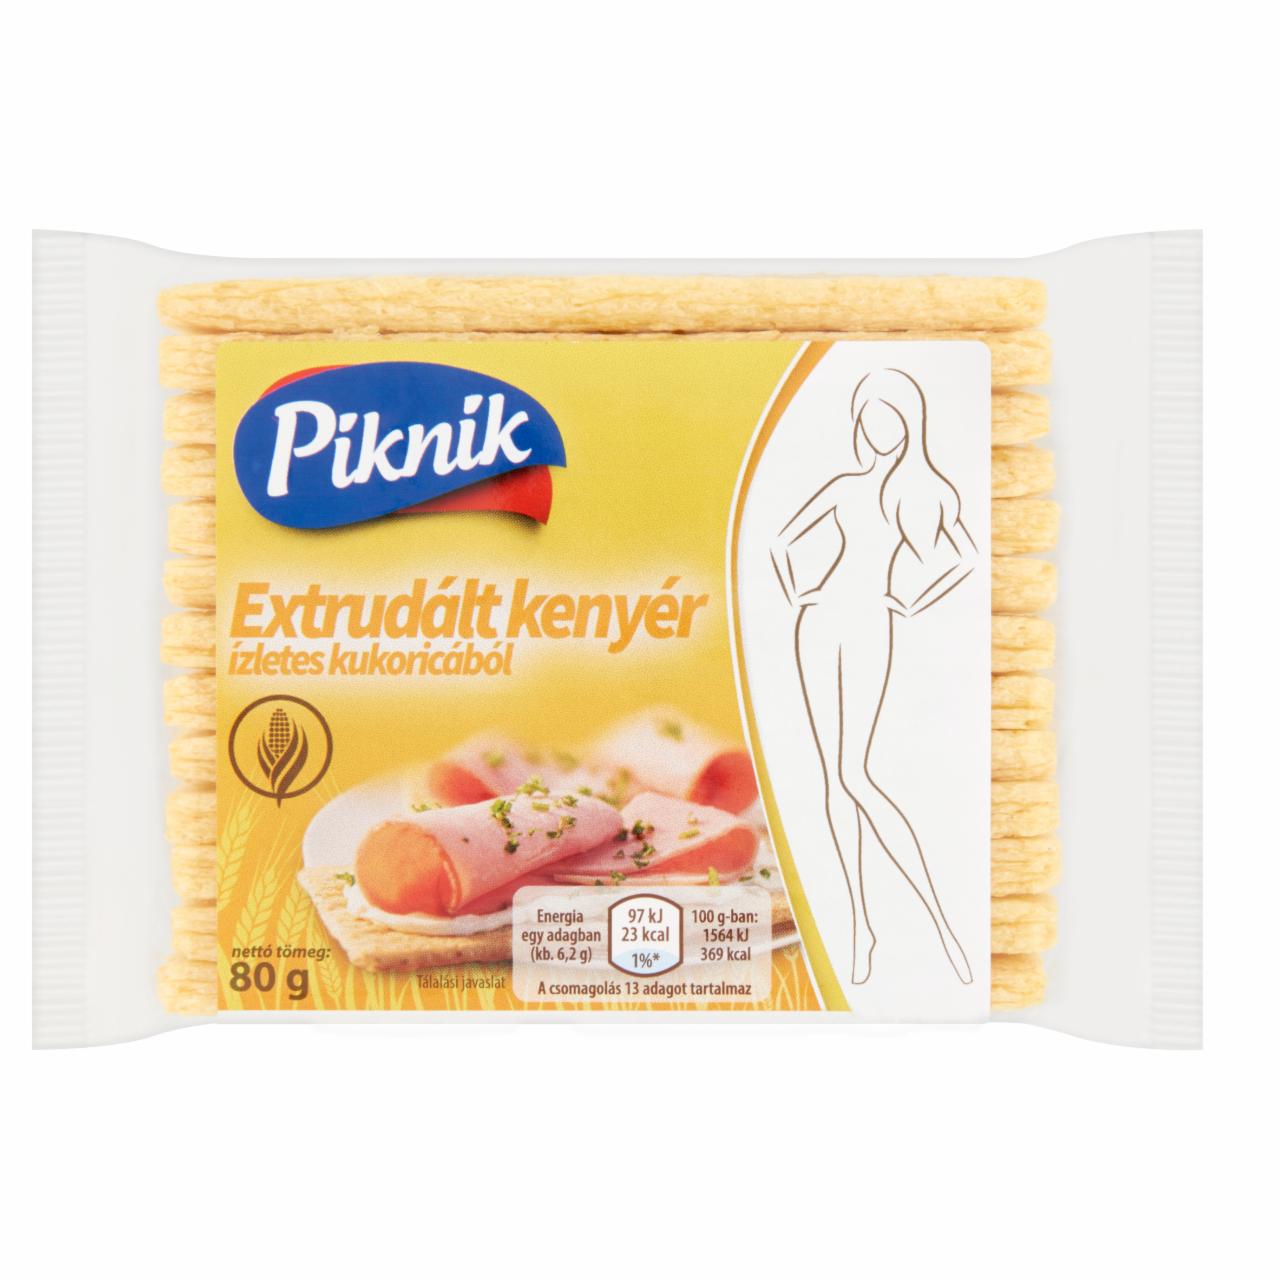 Képek - Piknik extrudált kenyér ízletes kukoricából 80 g